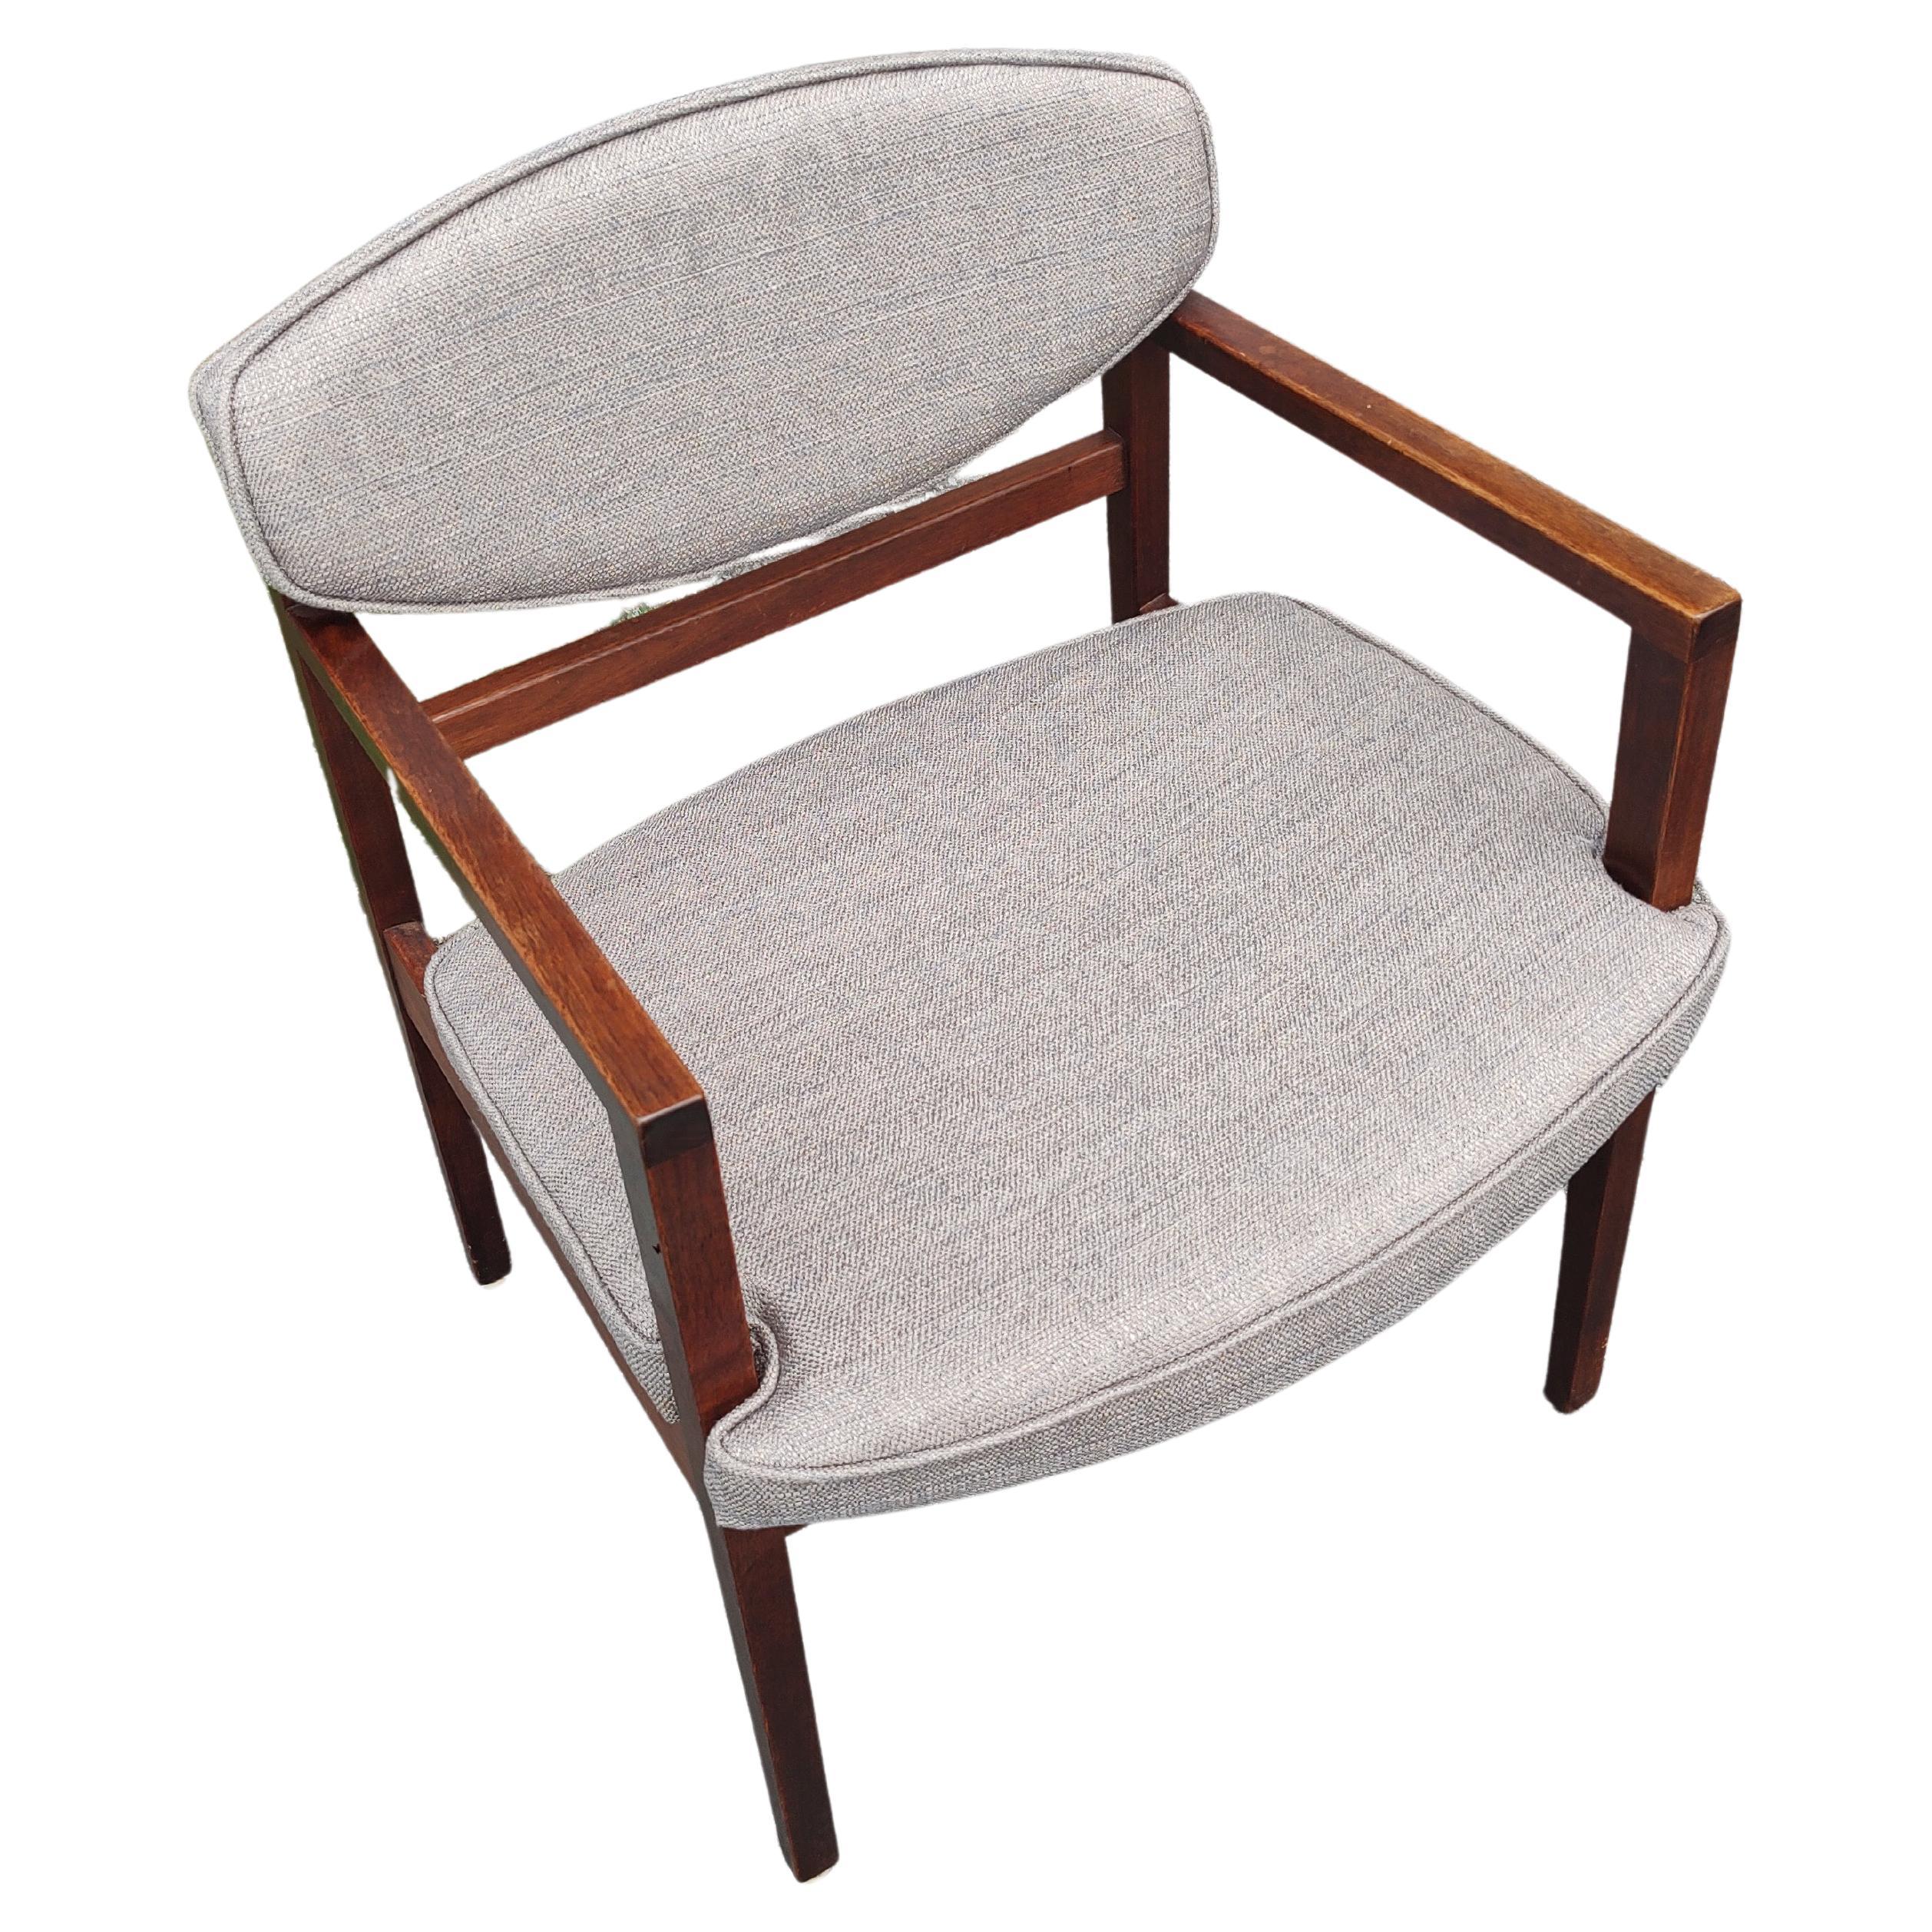 Fabuleux ensemble de huit chaises de salle à manger Mid Century Modern par George Nelson pour Herman Miller C1960. Deux fauteuils, 21x 21 x 29,5h x 18,5 hauteur d'assise, accoudoirs 25h. Le bois de teck est dans sa finition d'origine et le